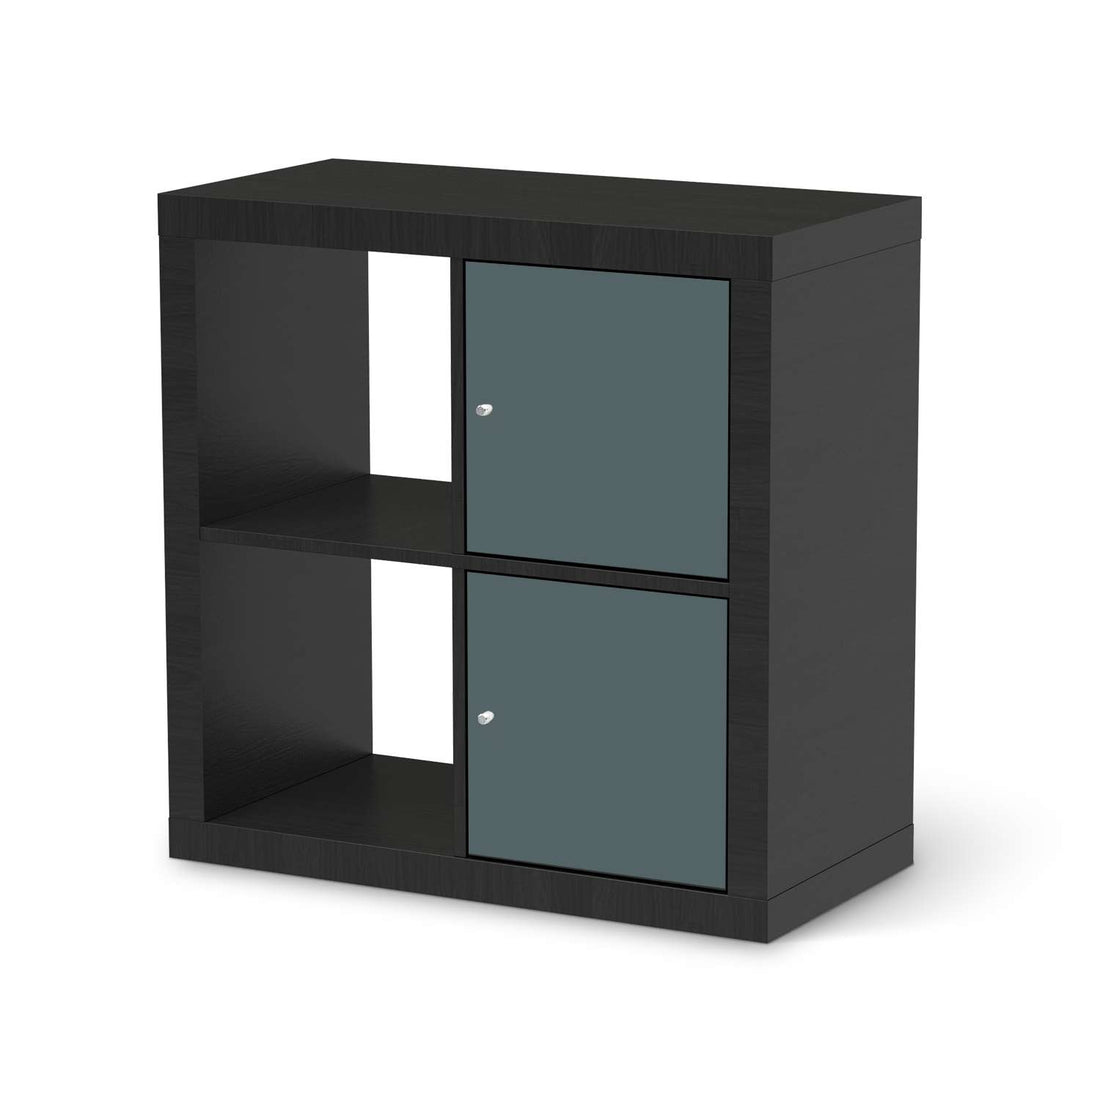 Klebefolie für Möbel Blaugrau Light - IKEA Expedit Regal 2 Türen Hoch - schwarz